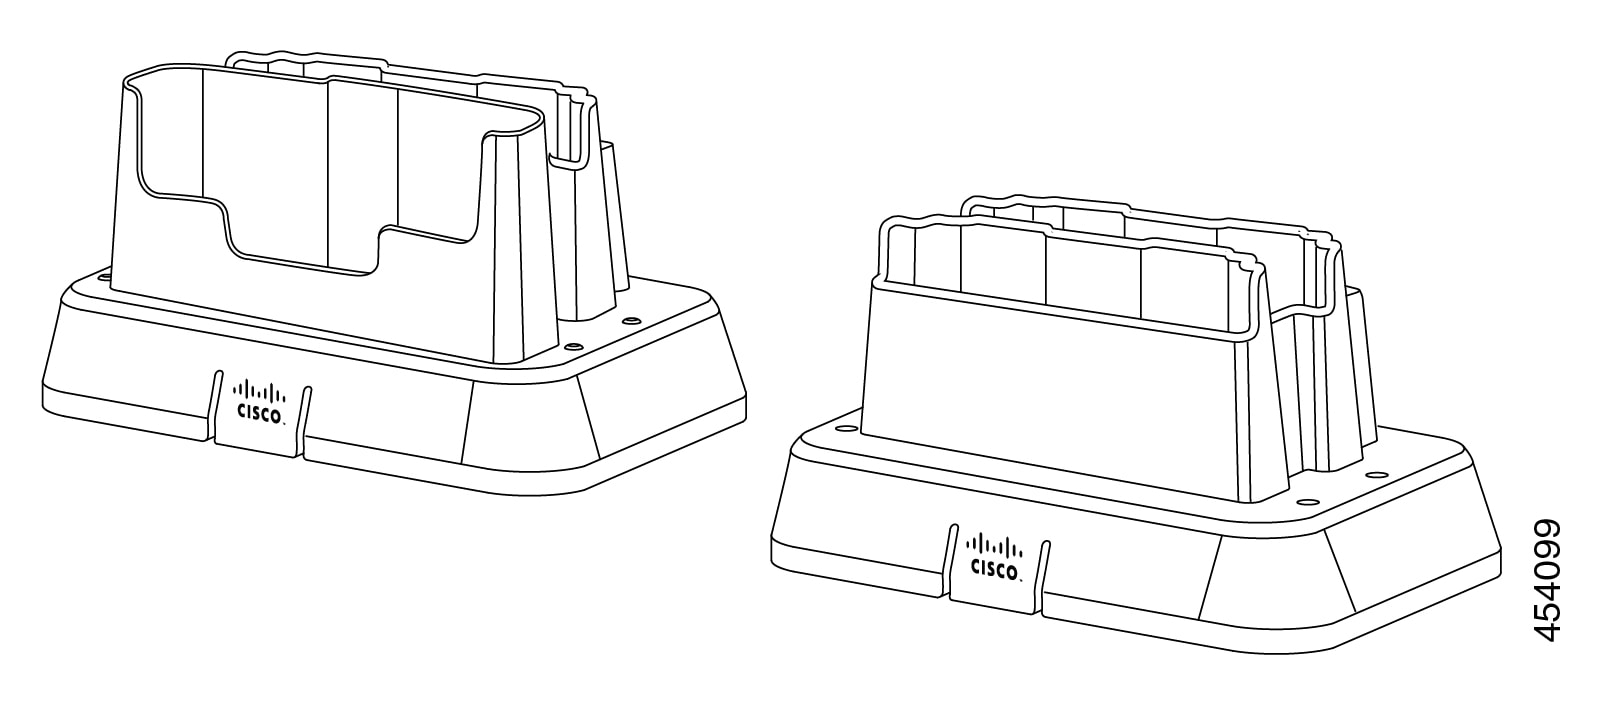 Abbildung des 860-Doppeltischladegeräts und des 860-Tischakkuladegeräts.